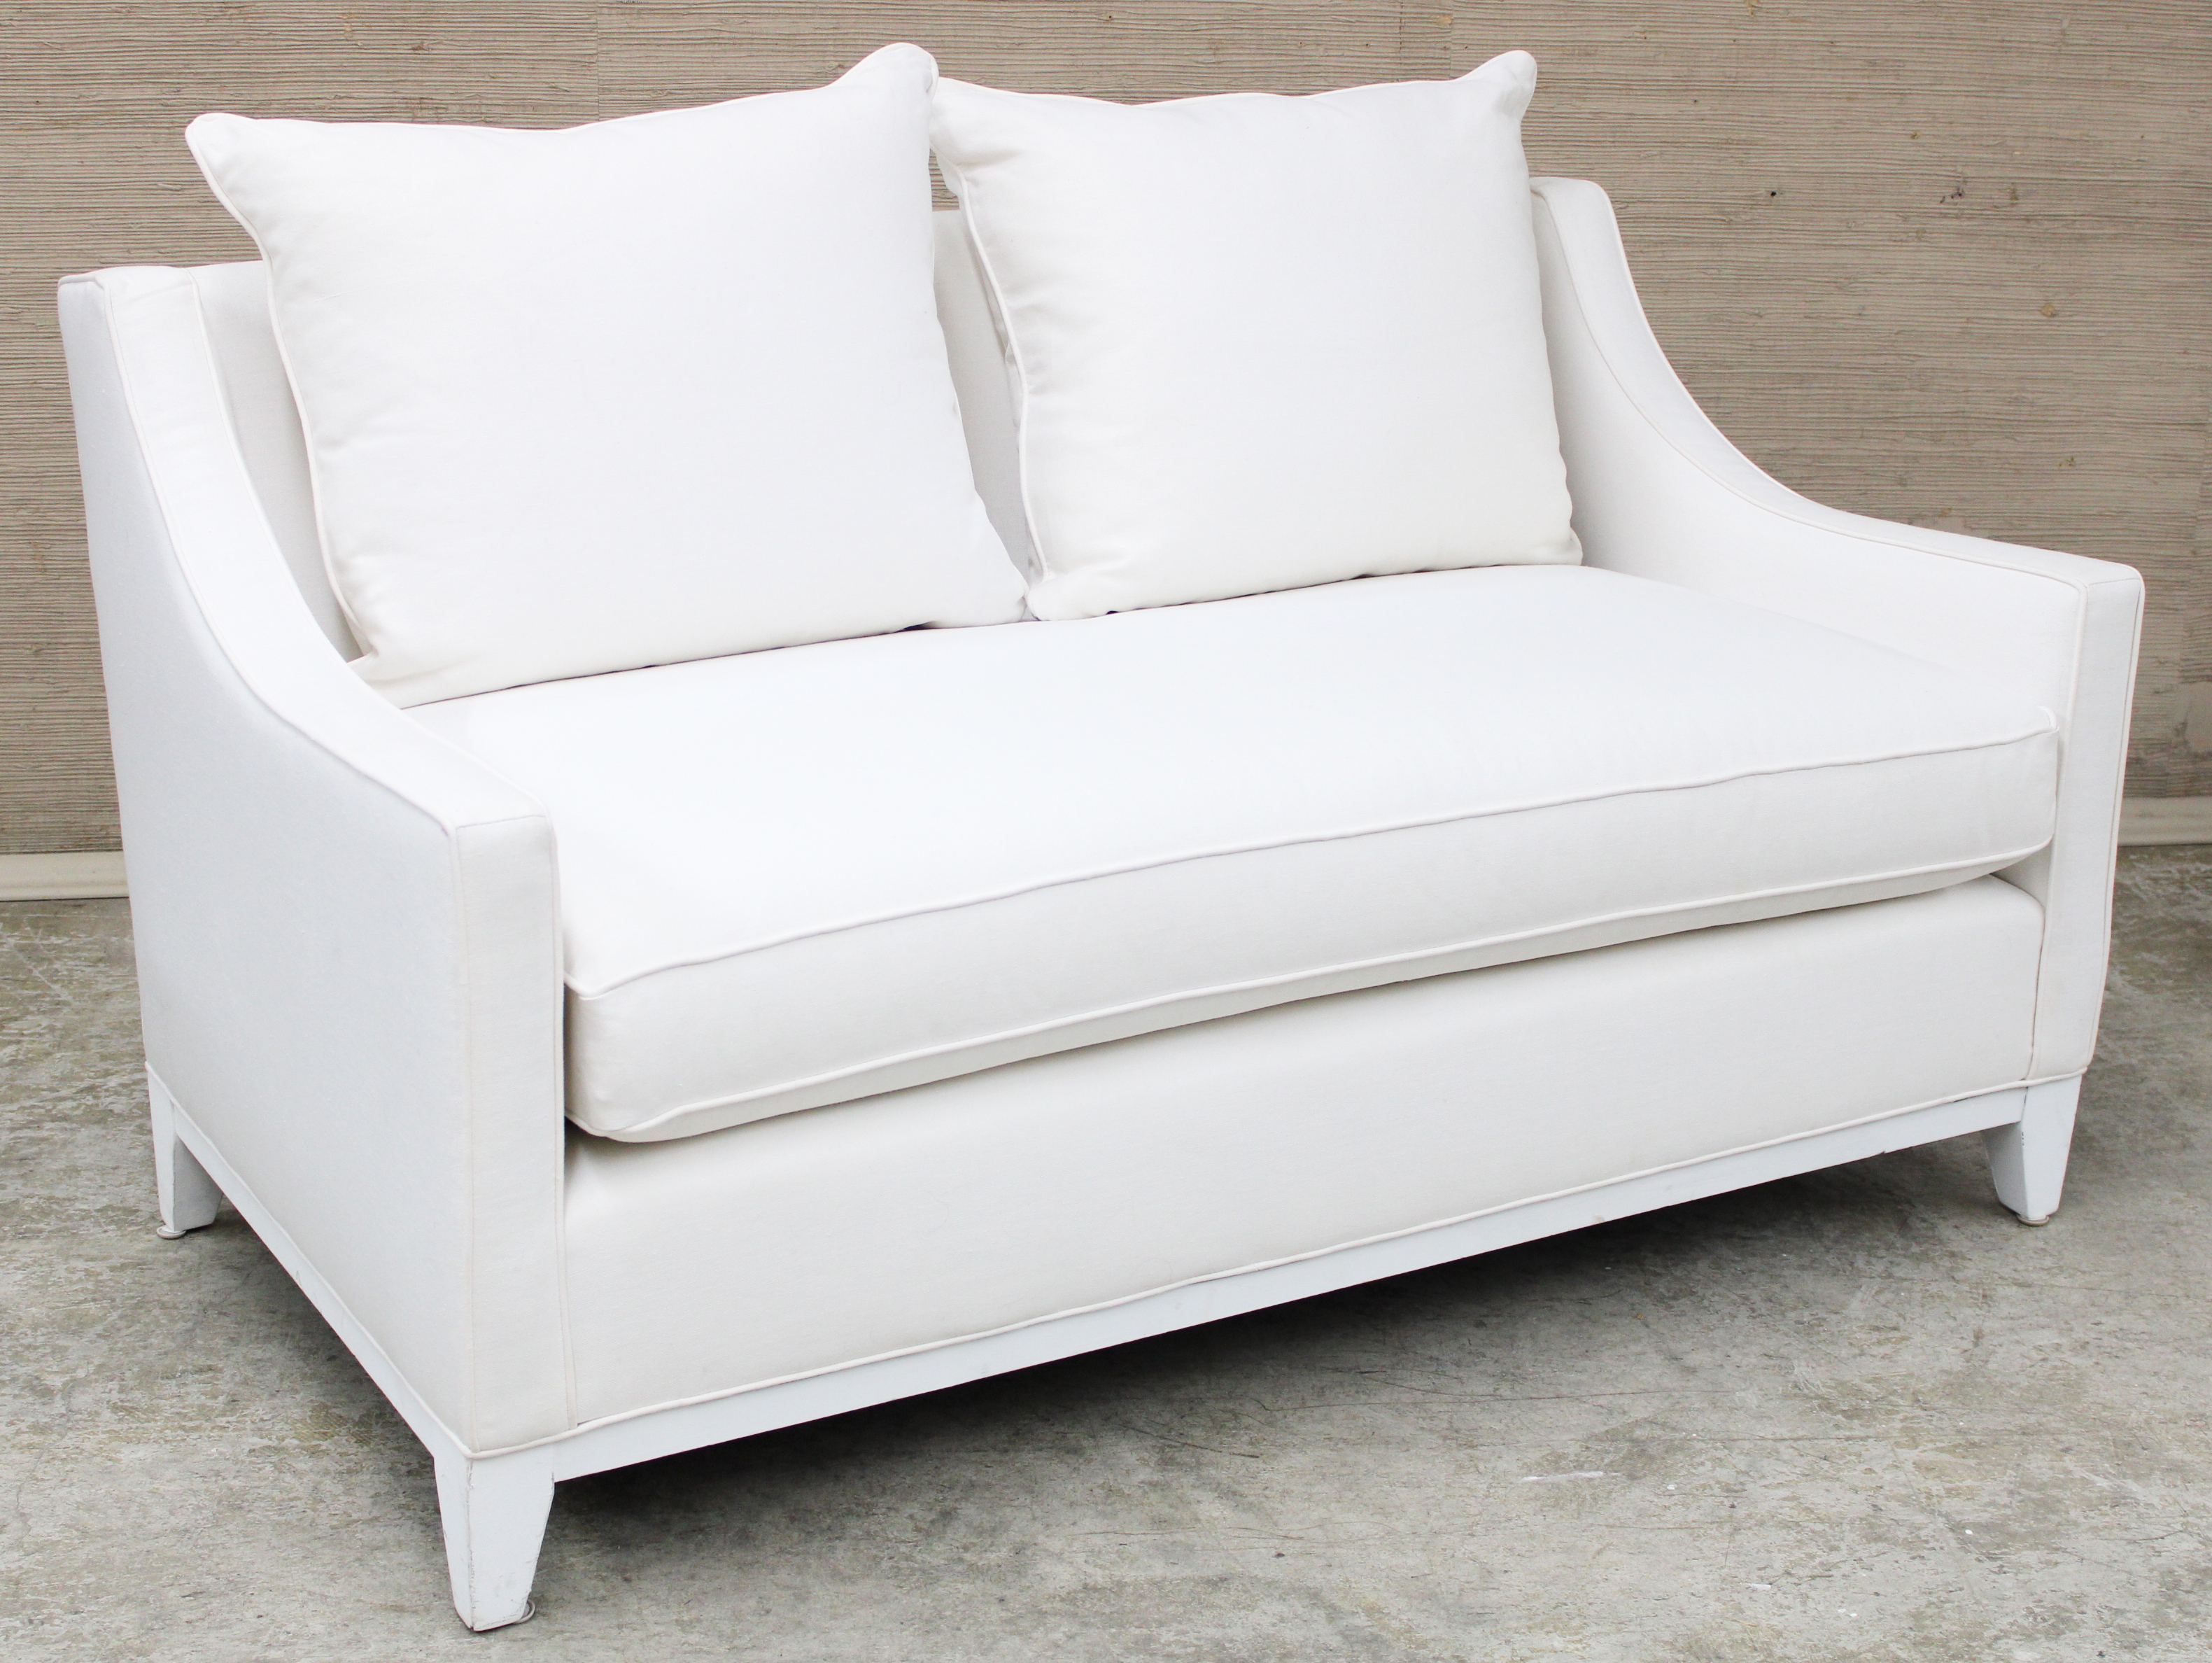 WILLIAMS SONOMA Upholstered white 2c8bbd